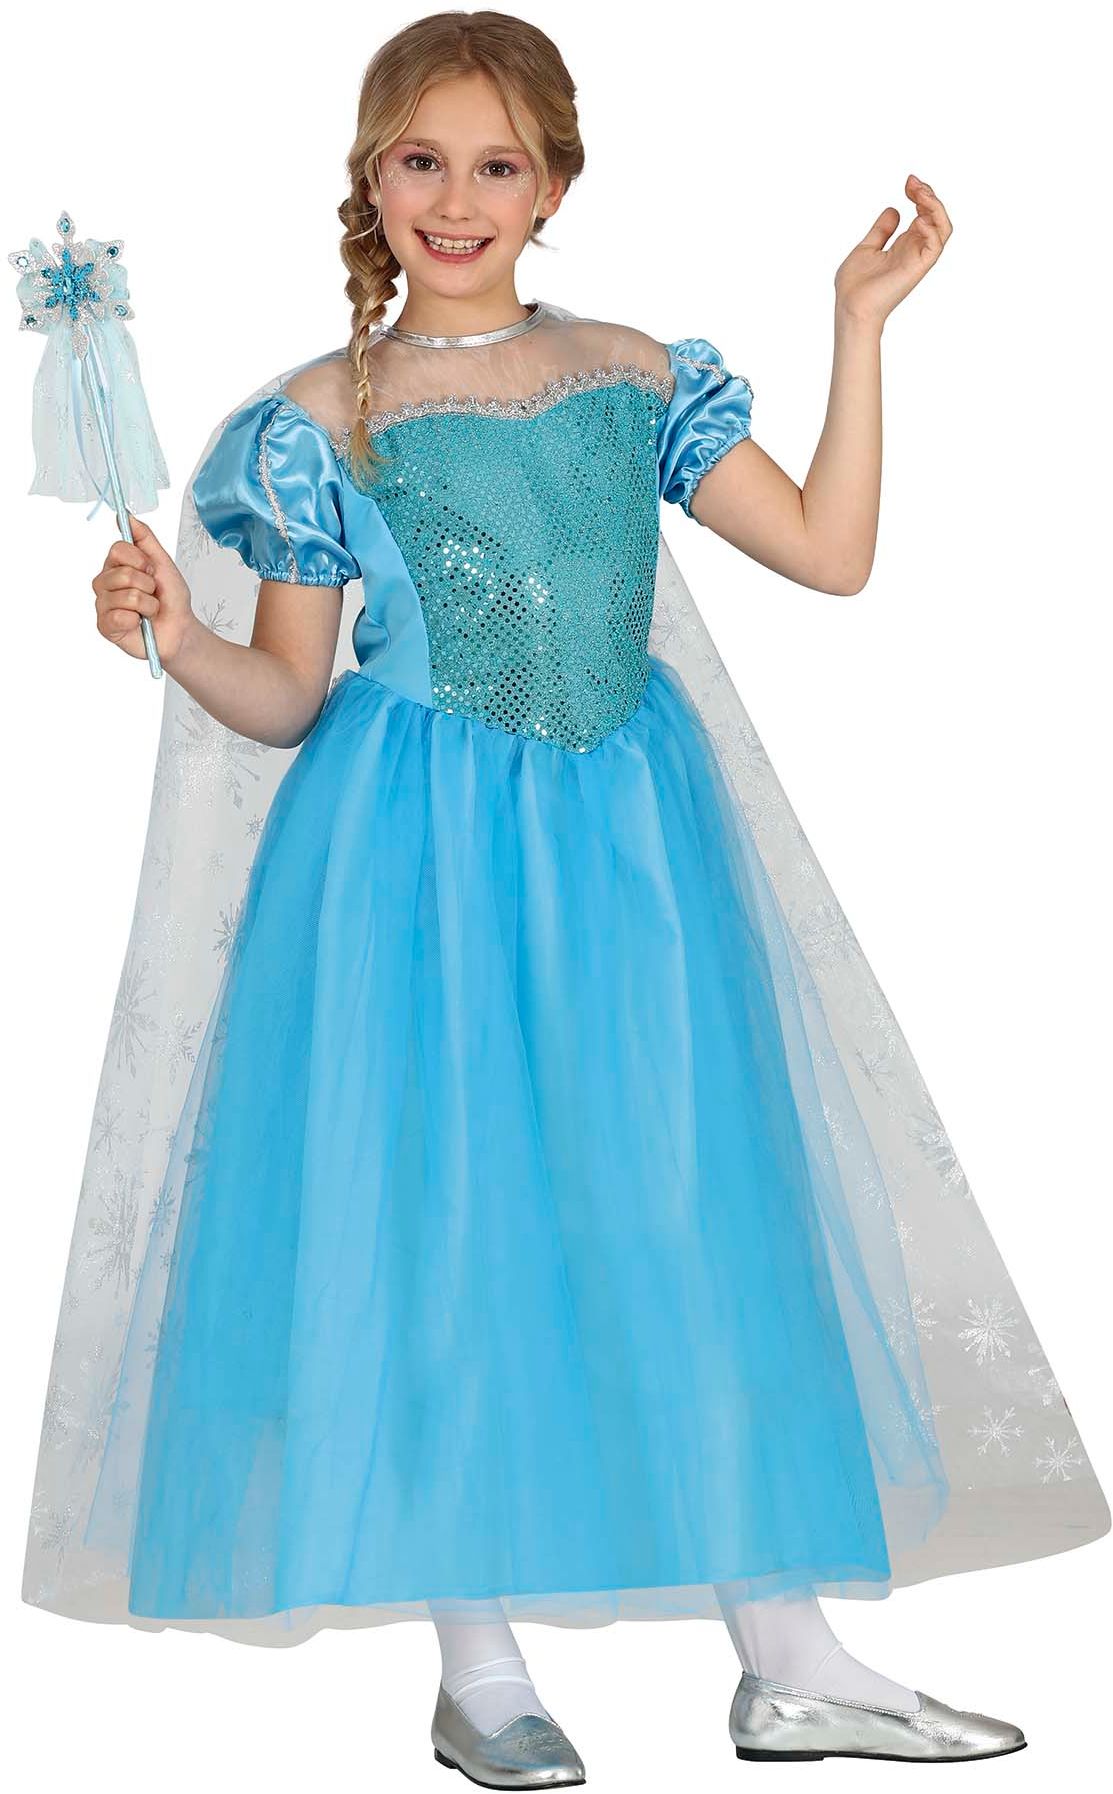 Blauwe frozen Elsa jurk meisje